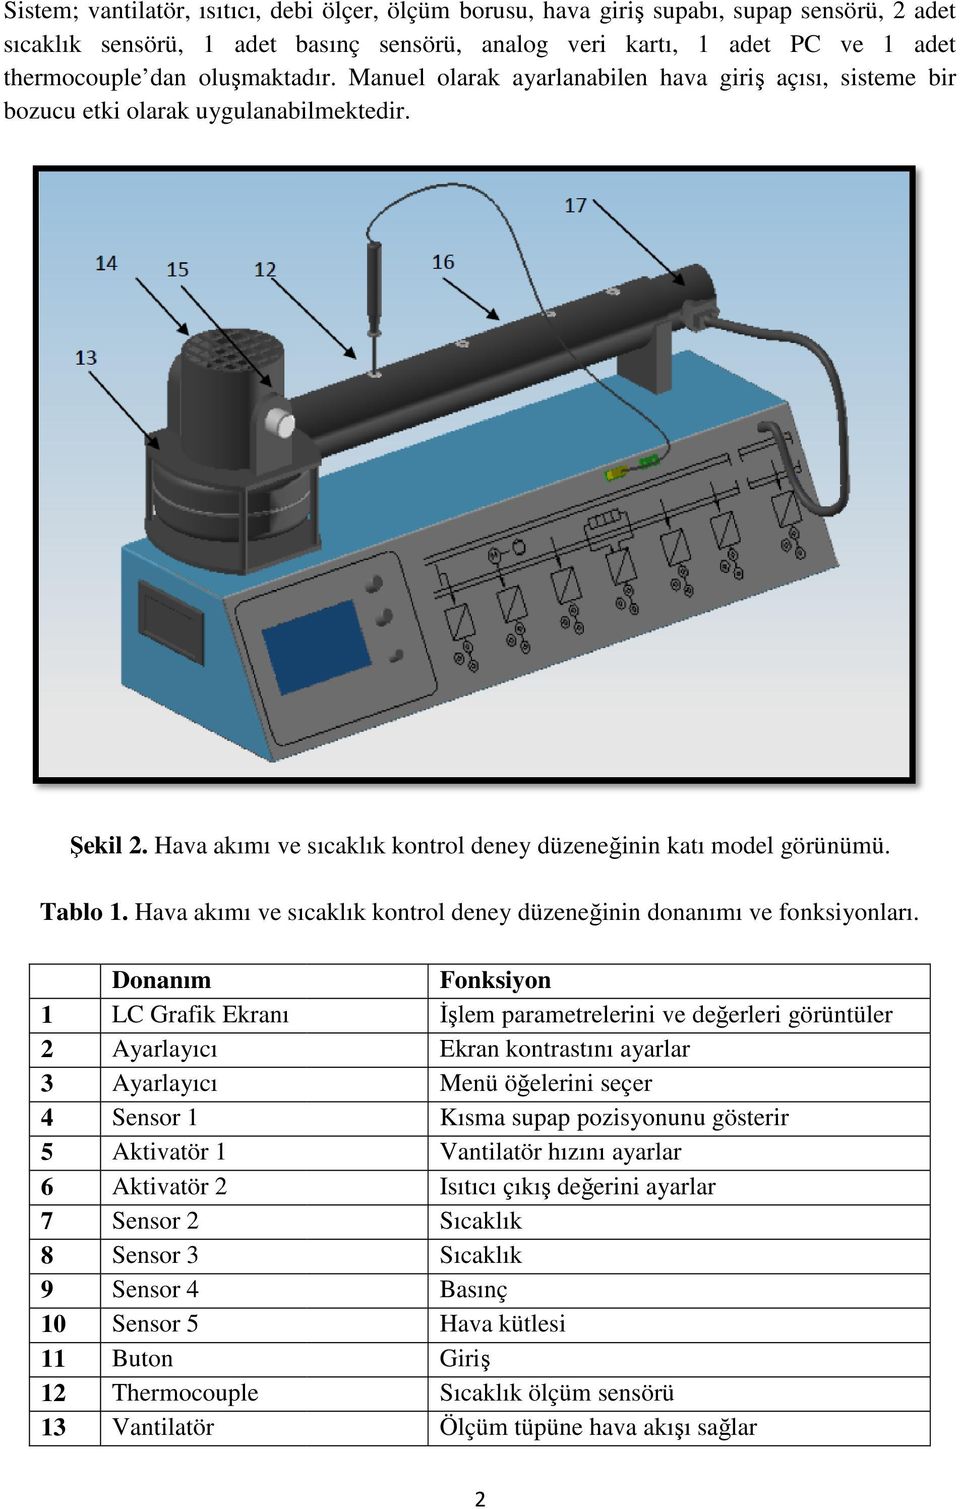 Hava akımı ve sıcaklık kontrol deney düzeneğinin donanımı ve fonksiyonları.